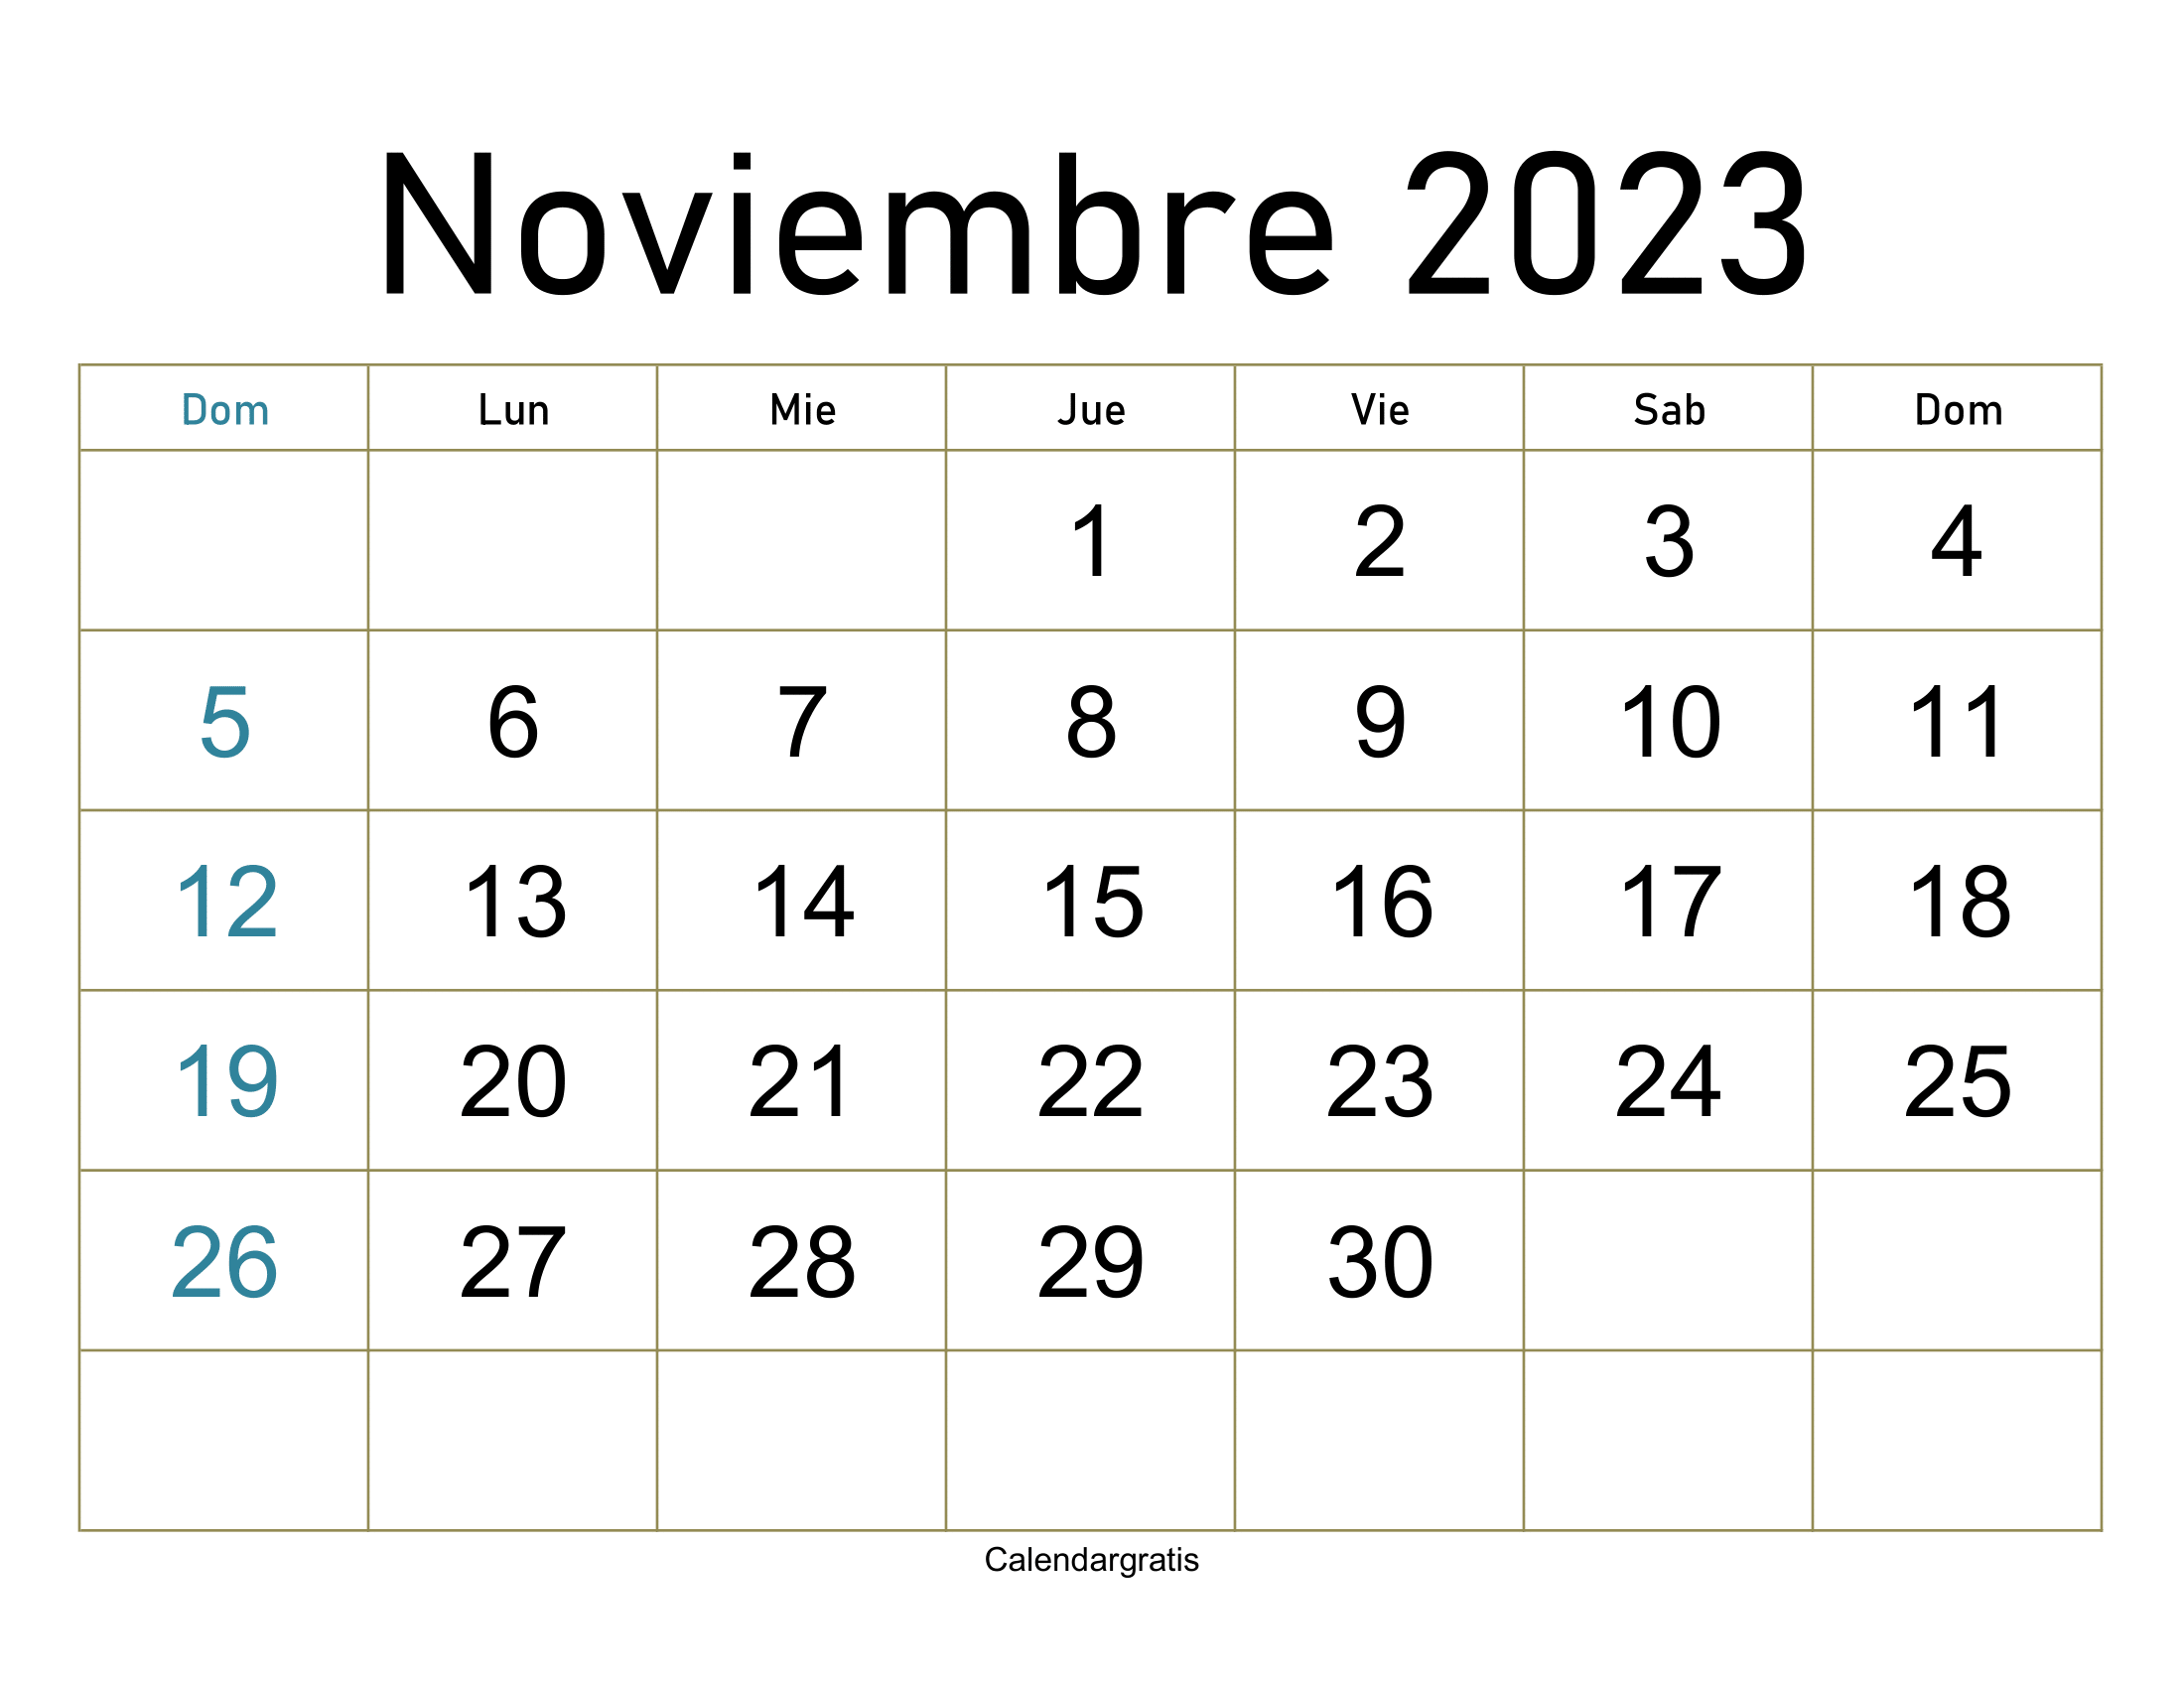 Visualiza tu mes con el calendario de noviembre 2023 imprimible